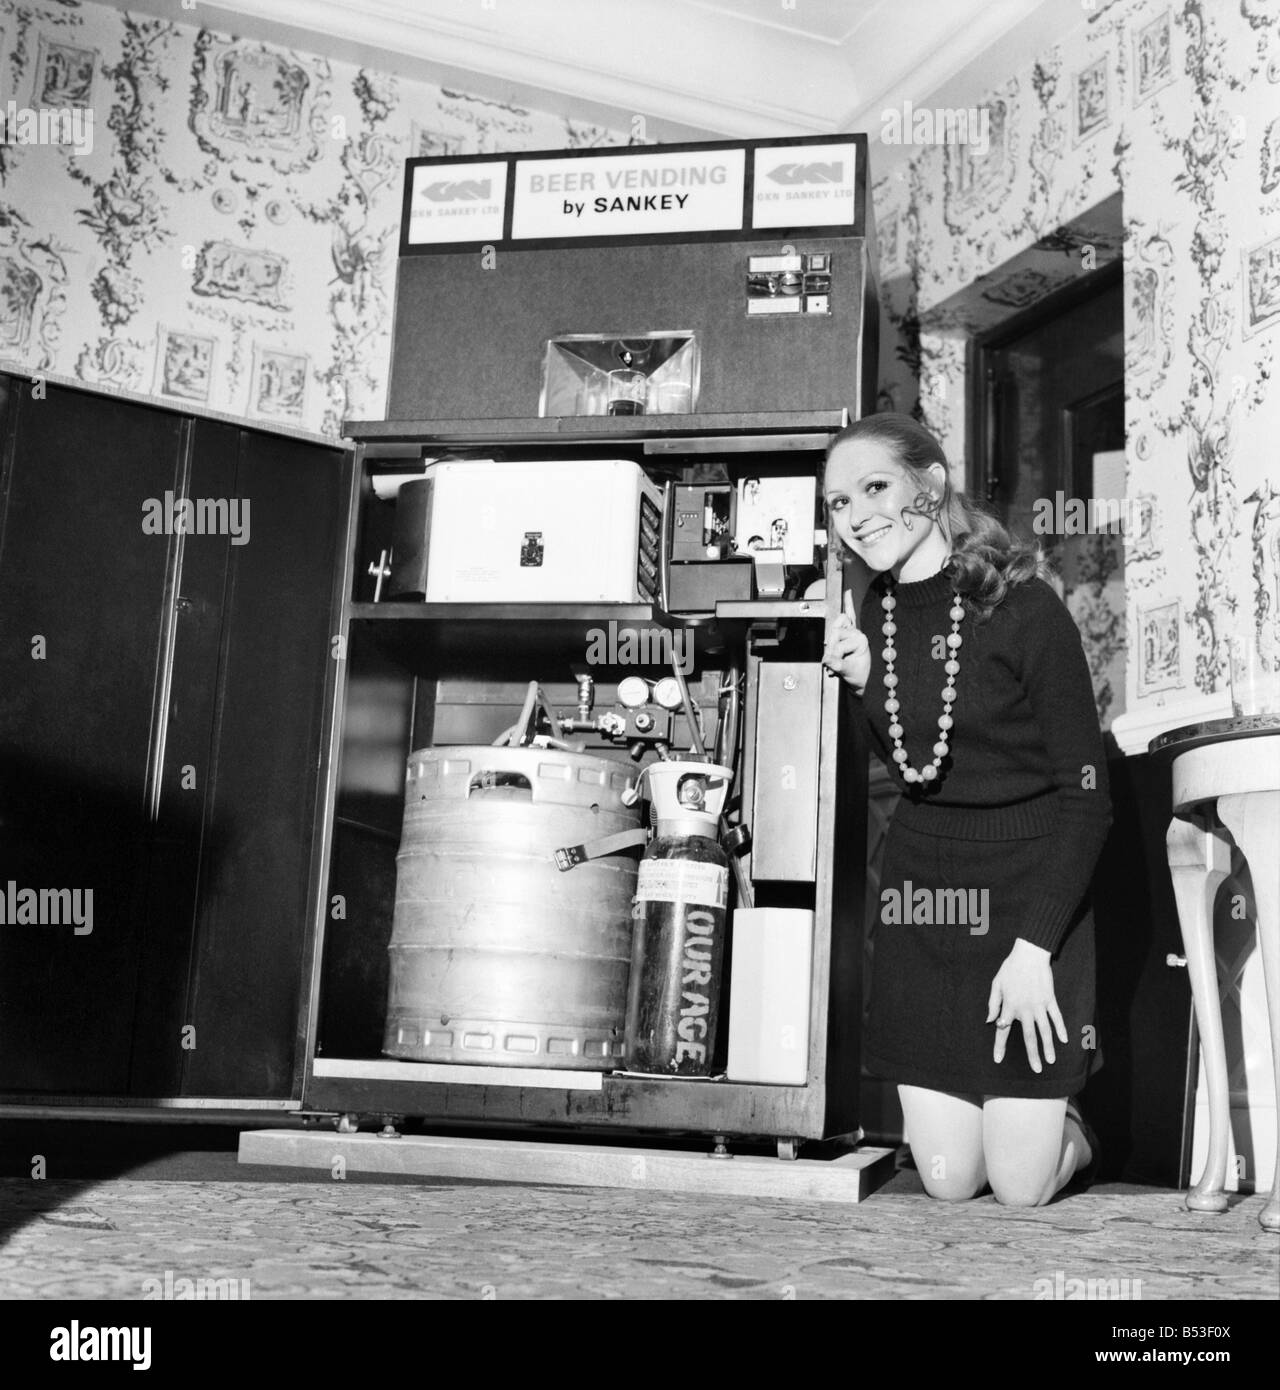 Invenzioni: Gran Bretagna il primo frigorifero automatico birra distributore automatico è stato dimostrato dalla birreria divisione di GKN Sankey Ltd., Bilston Staffs, a Quaglino's Bury Street, Londra. Donna che dimostra la macchina è Miss Sheila tremare (24). Dicembre 1969 Z11595-002 Foto Stock